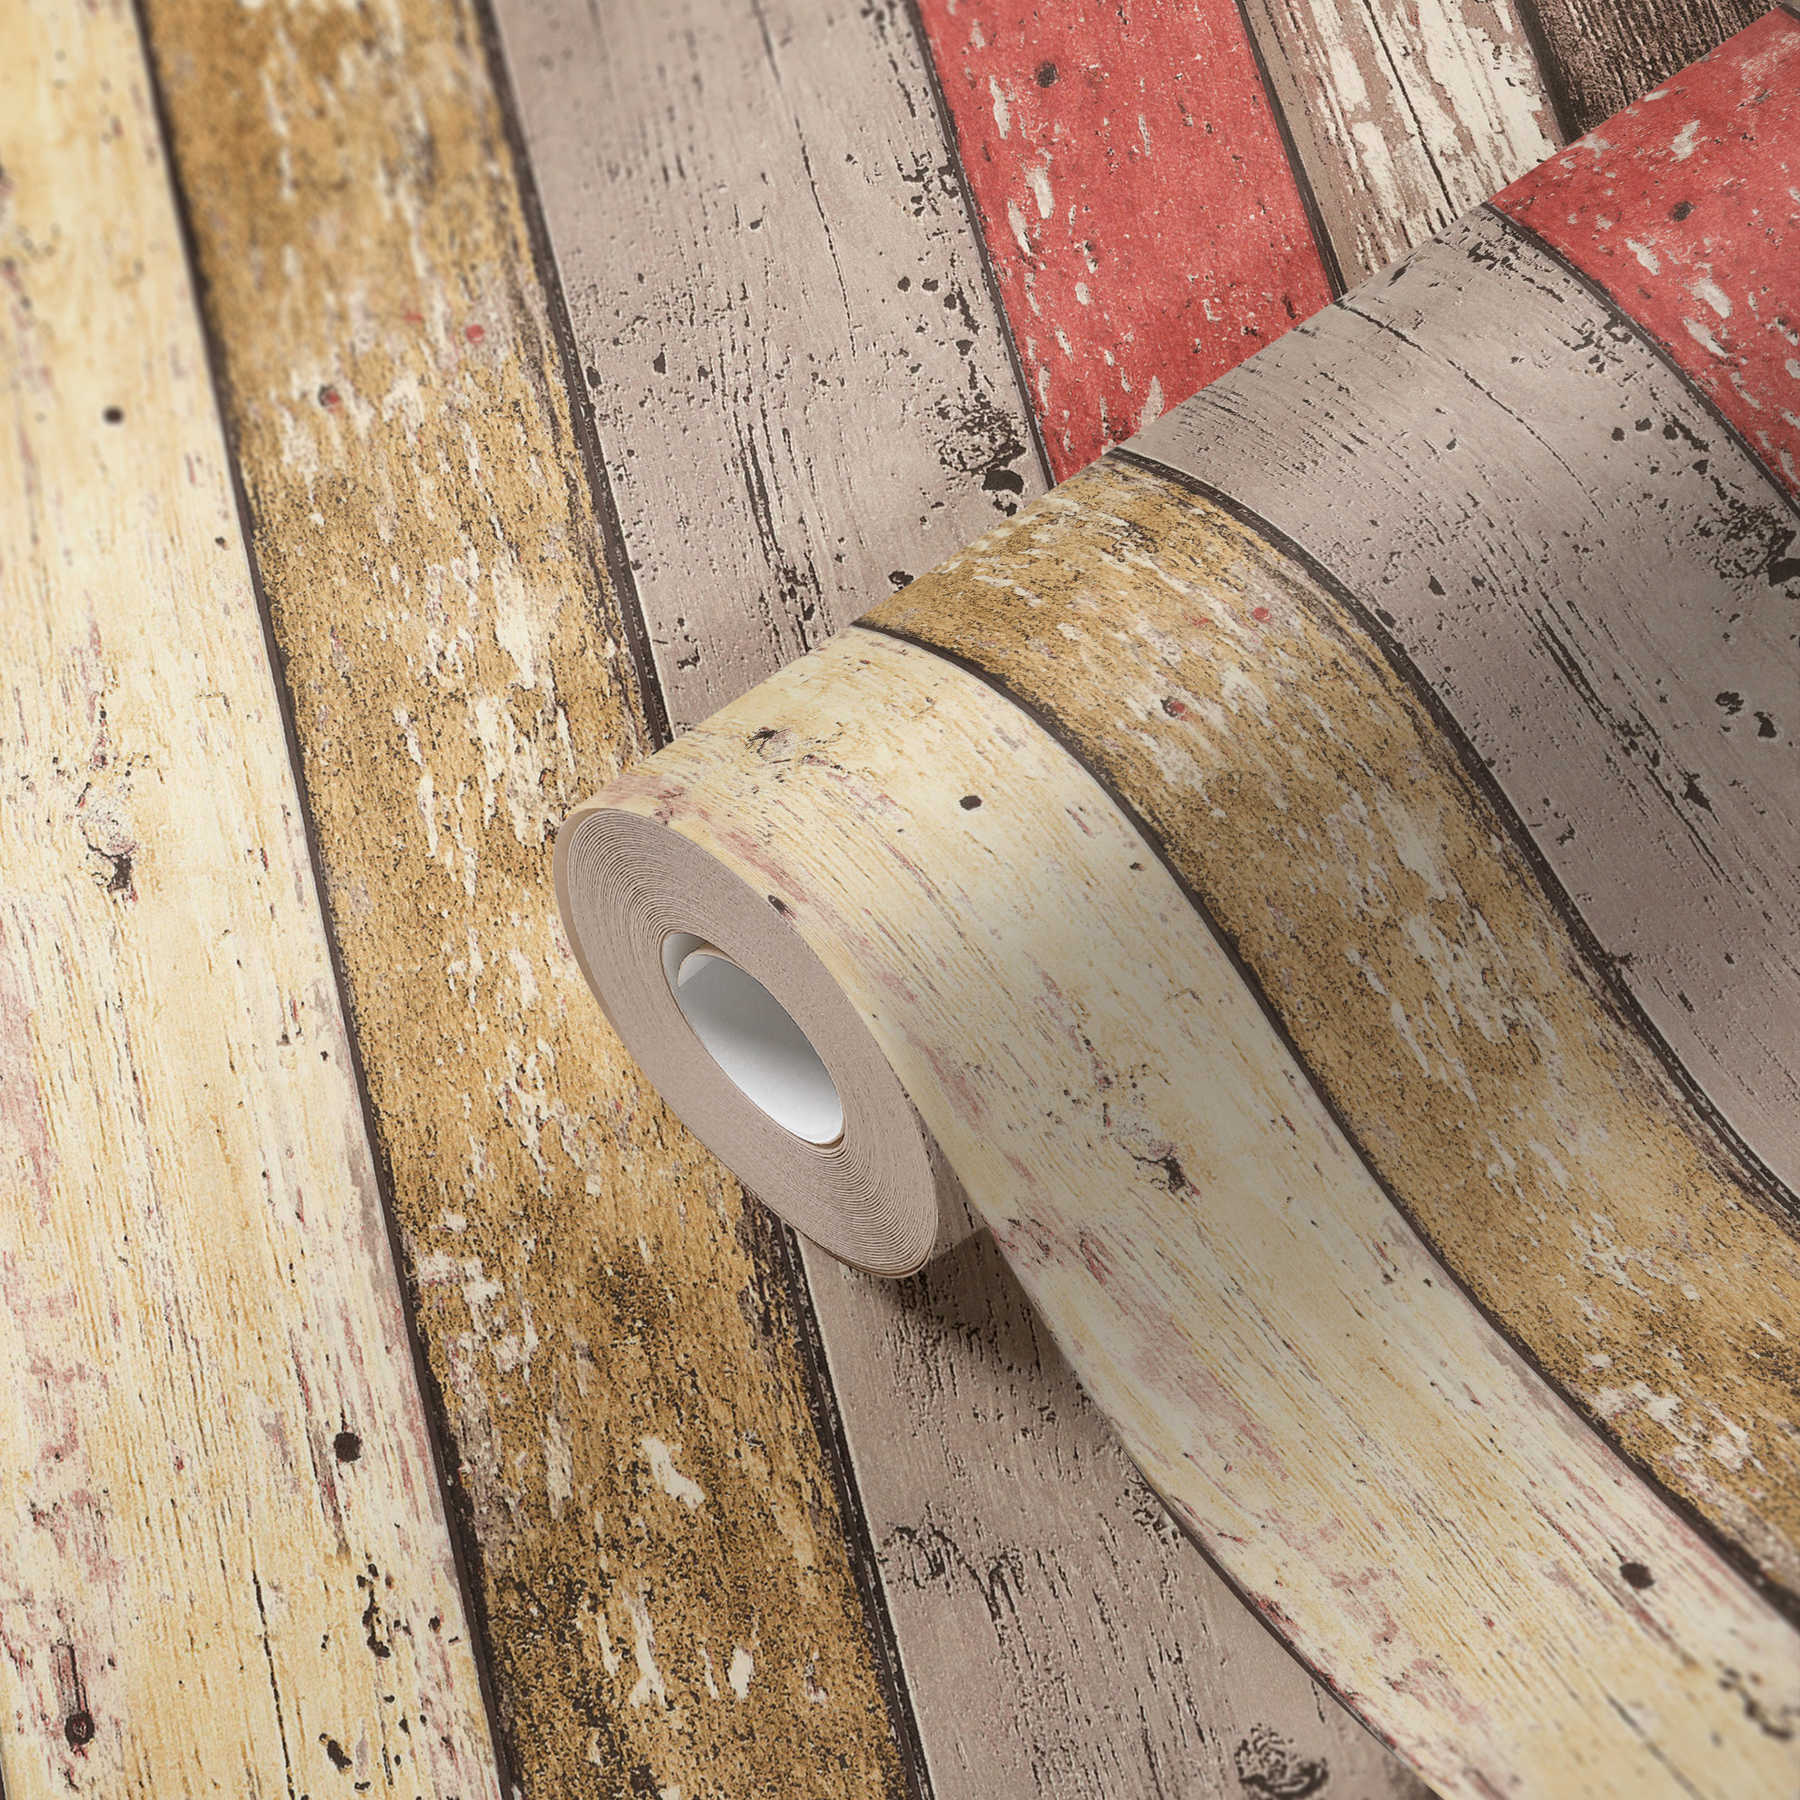             Papel pintado de madera con aspecto usado para el estilo vintage y campestre - marrón, rojo, beige
        